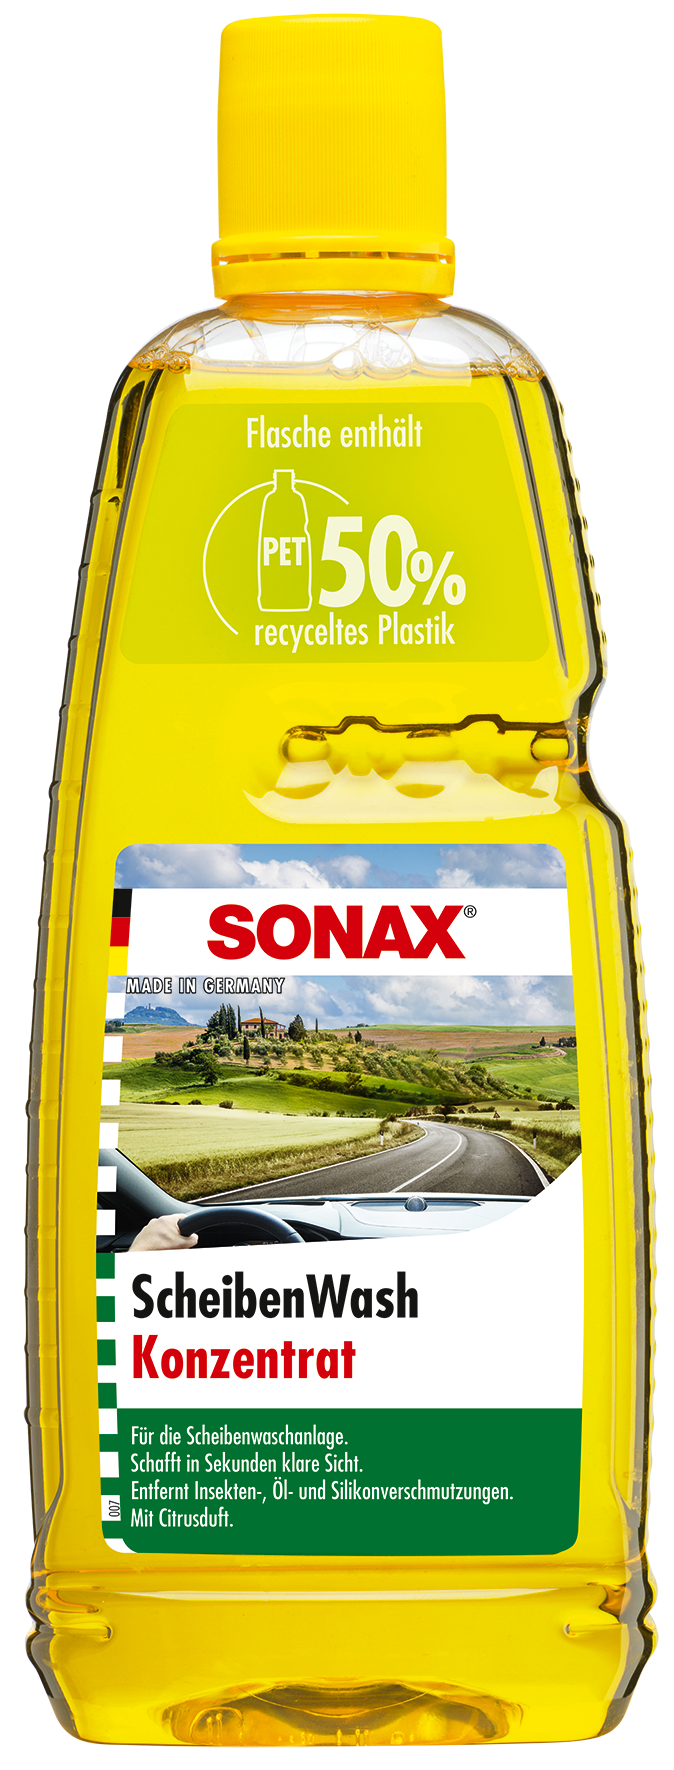 SONAX 02645000 ScheibenReiniger gebrauchsfertig Ocean-fresh